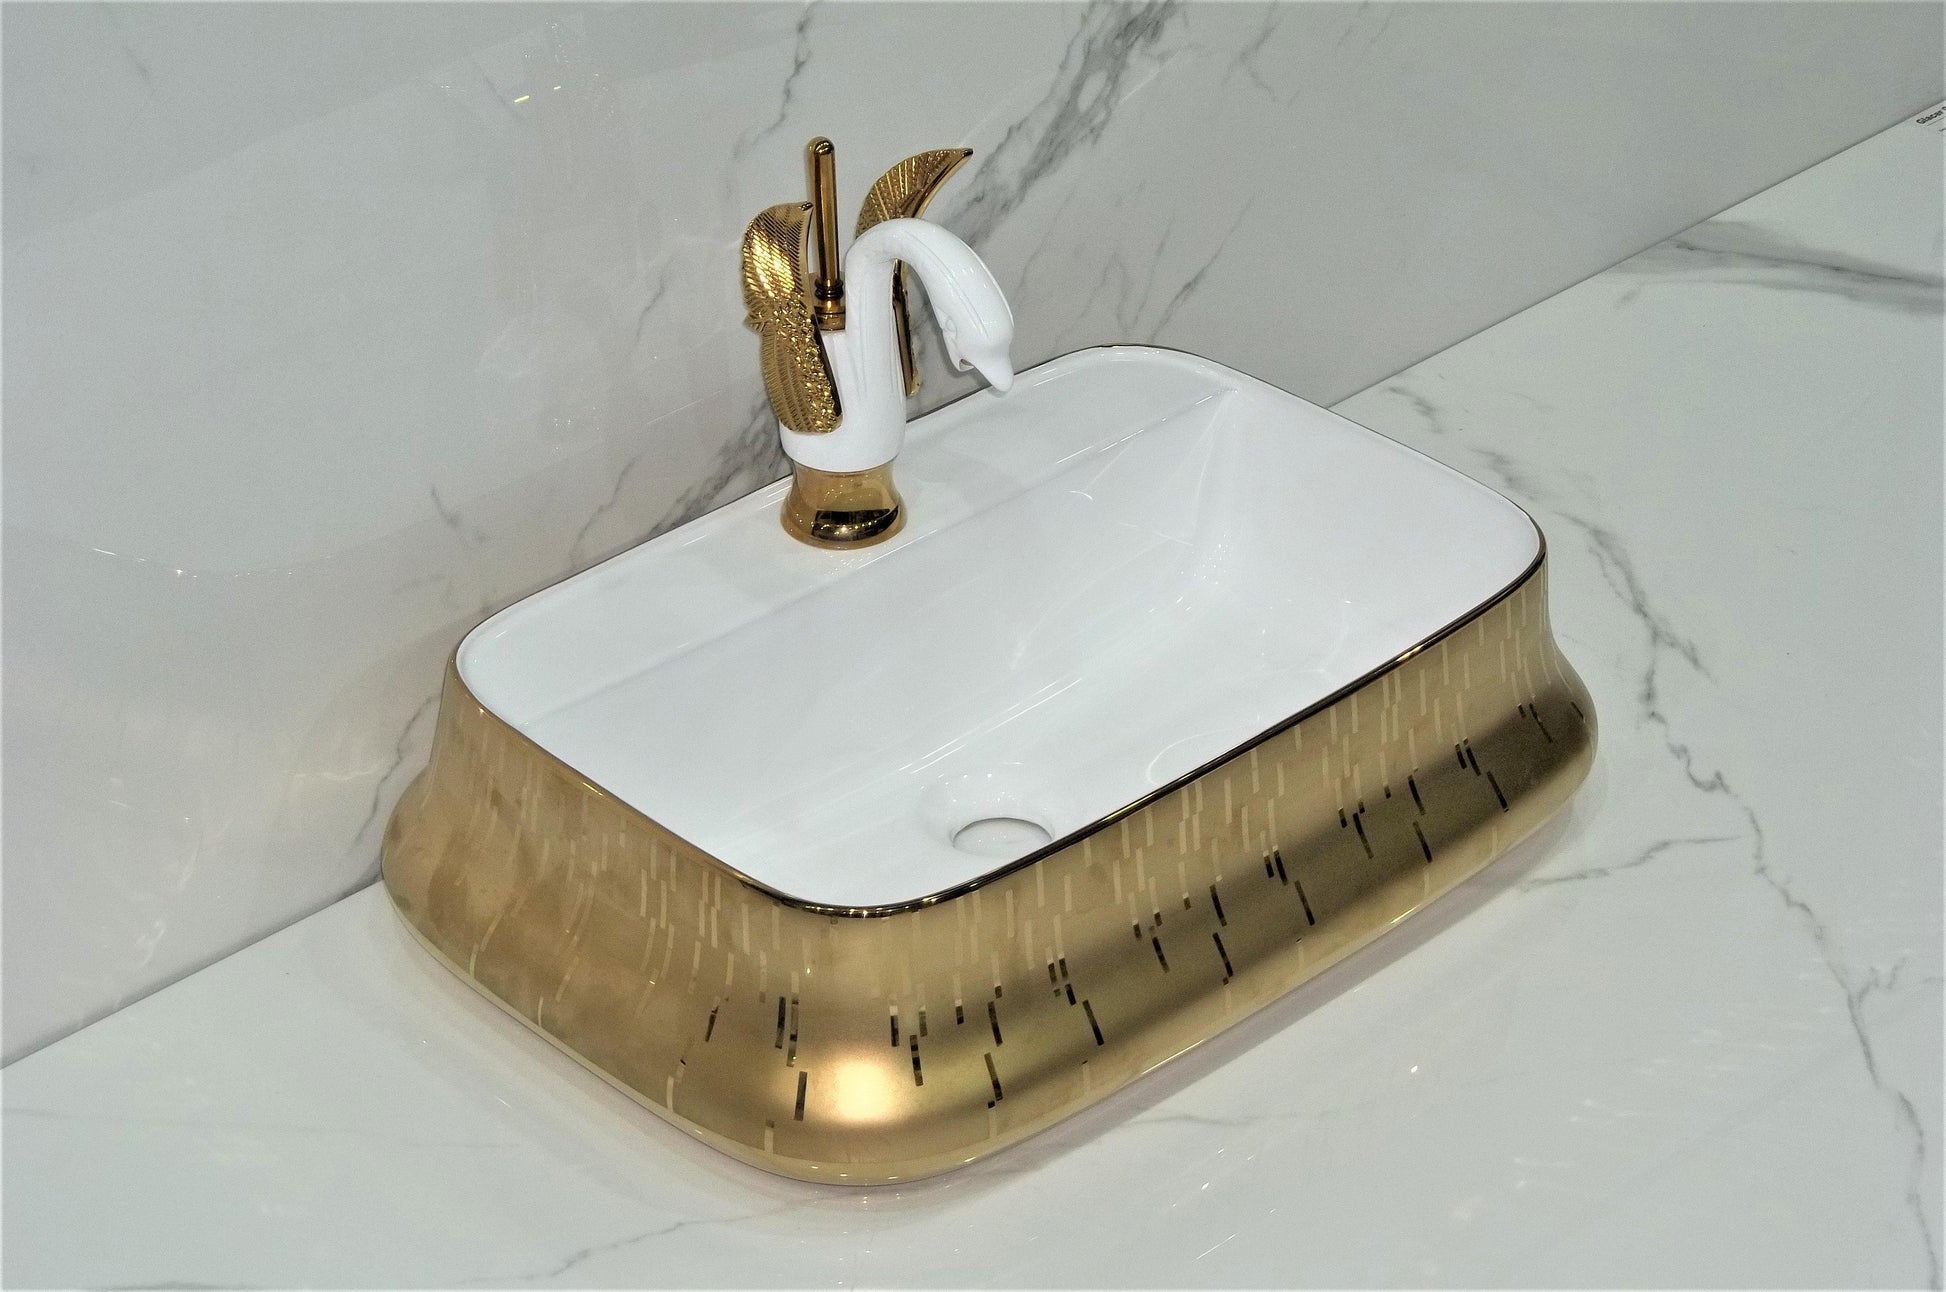 Table Top Premium Designer Ceramic Wash Basin/Vessel Rectangle Golden Designer for Bathroom 21 x 14.5 x 5 Inch Gold White - Bath Outlet